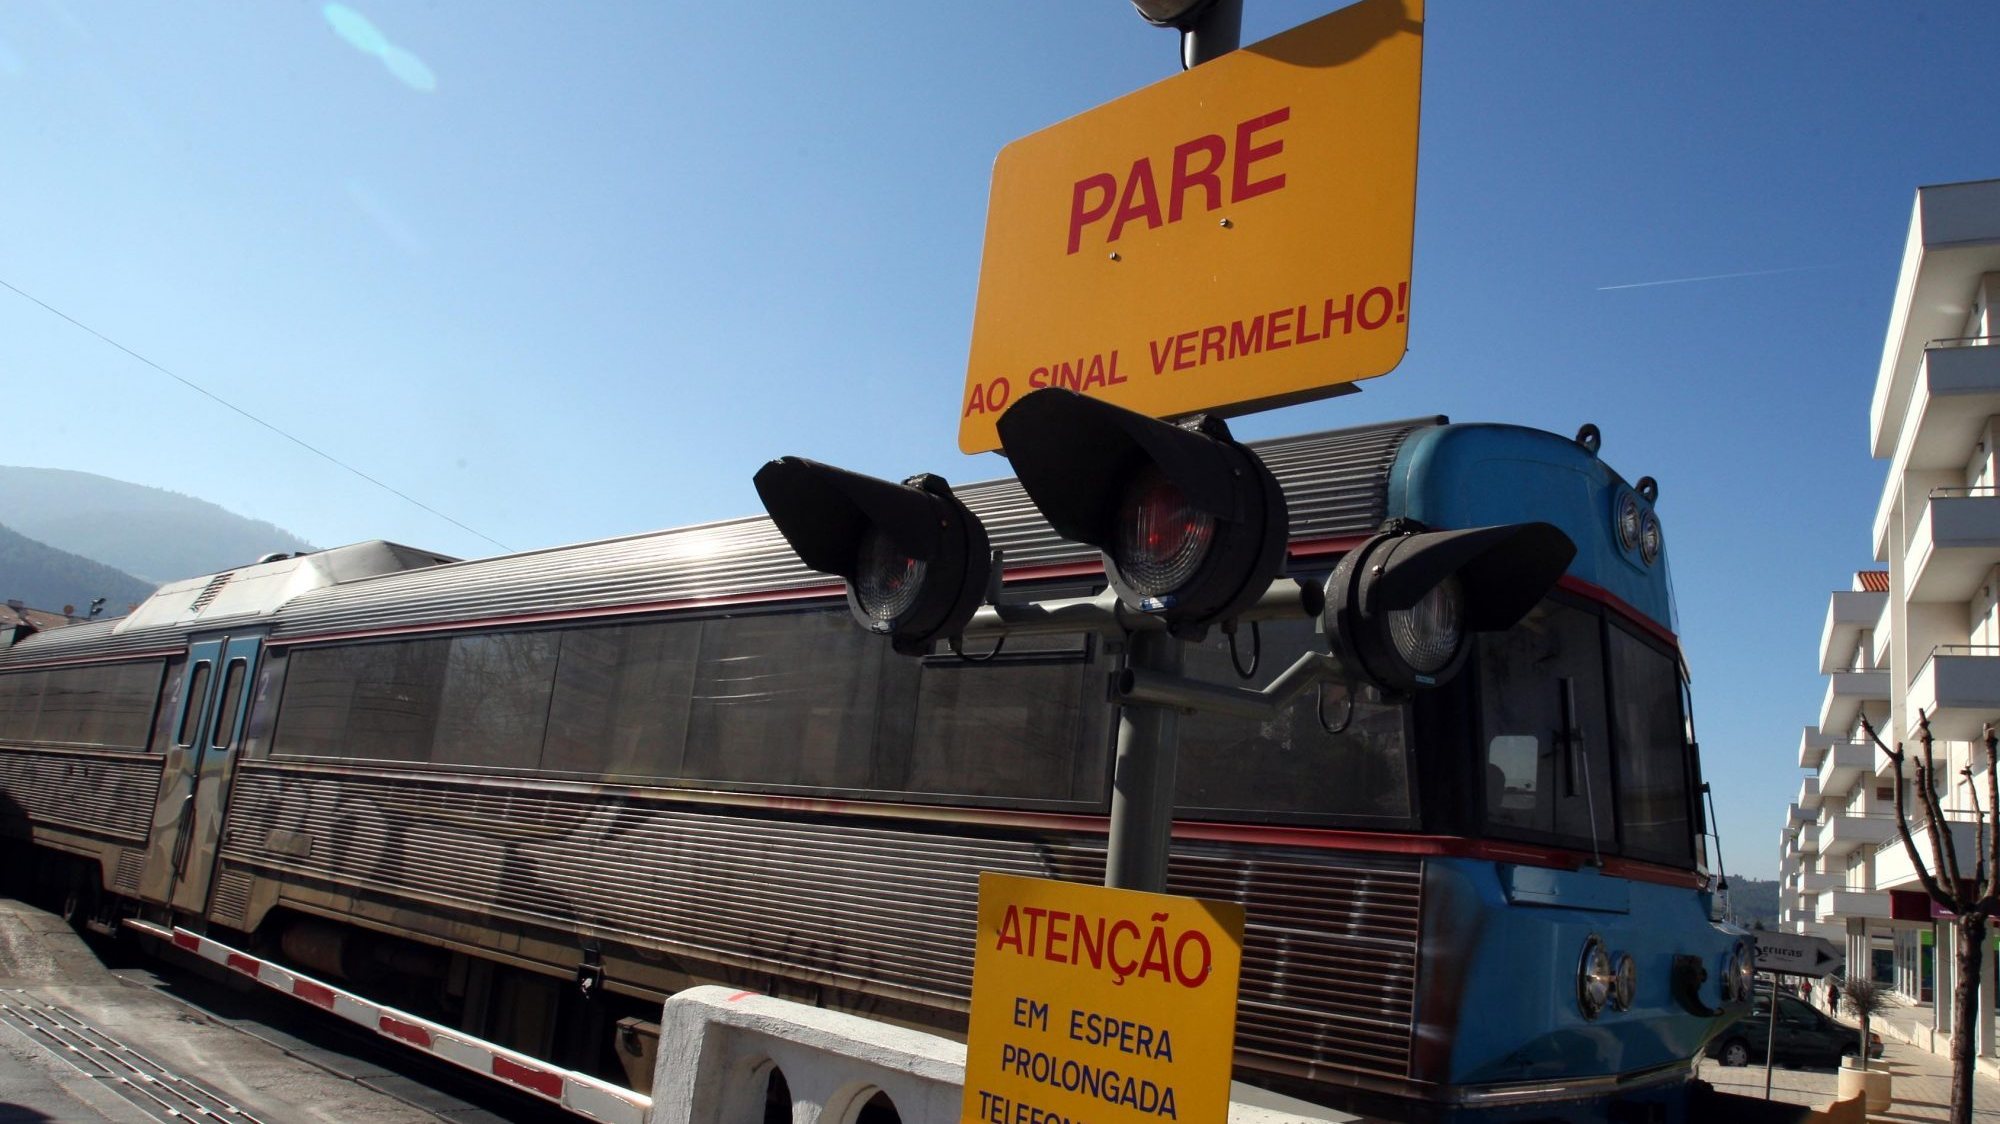 O acidente envolveu um comboio inter-regional que fazia a ligação entre Valença e Viana do Castelo